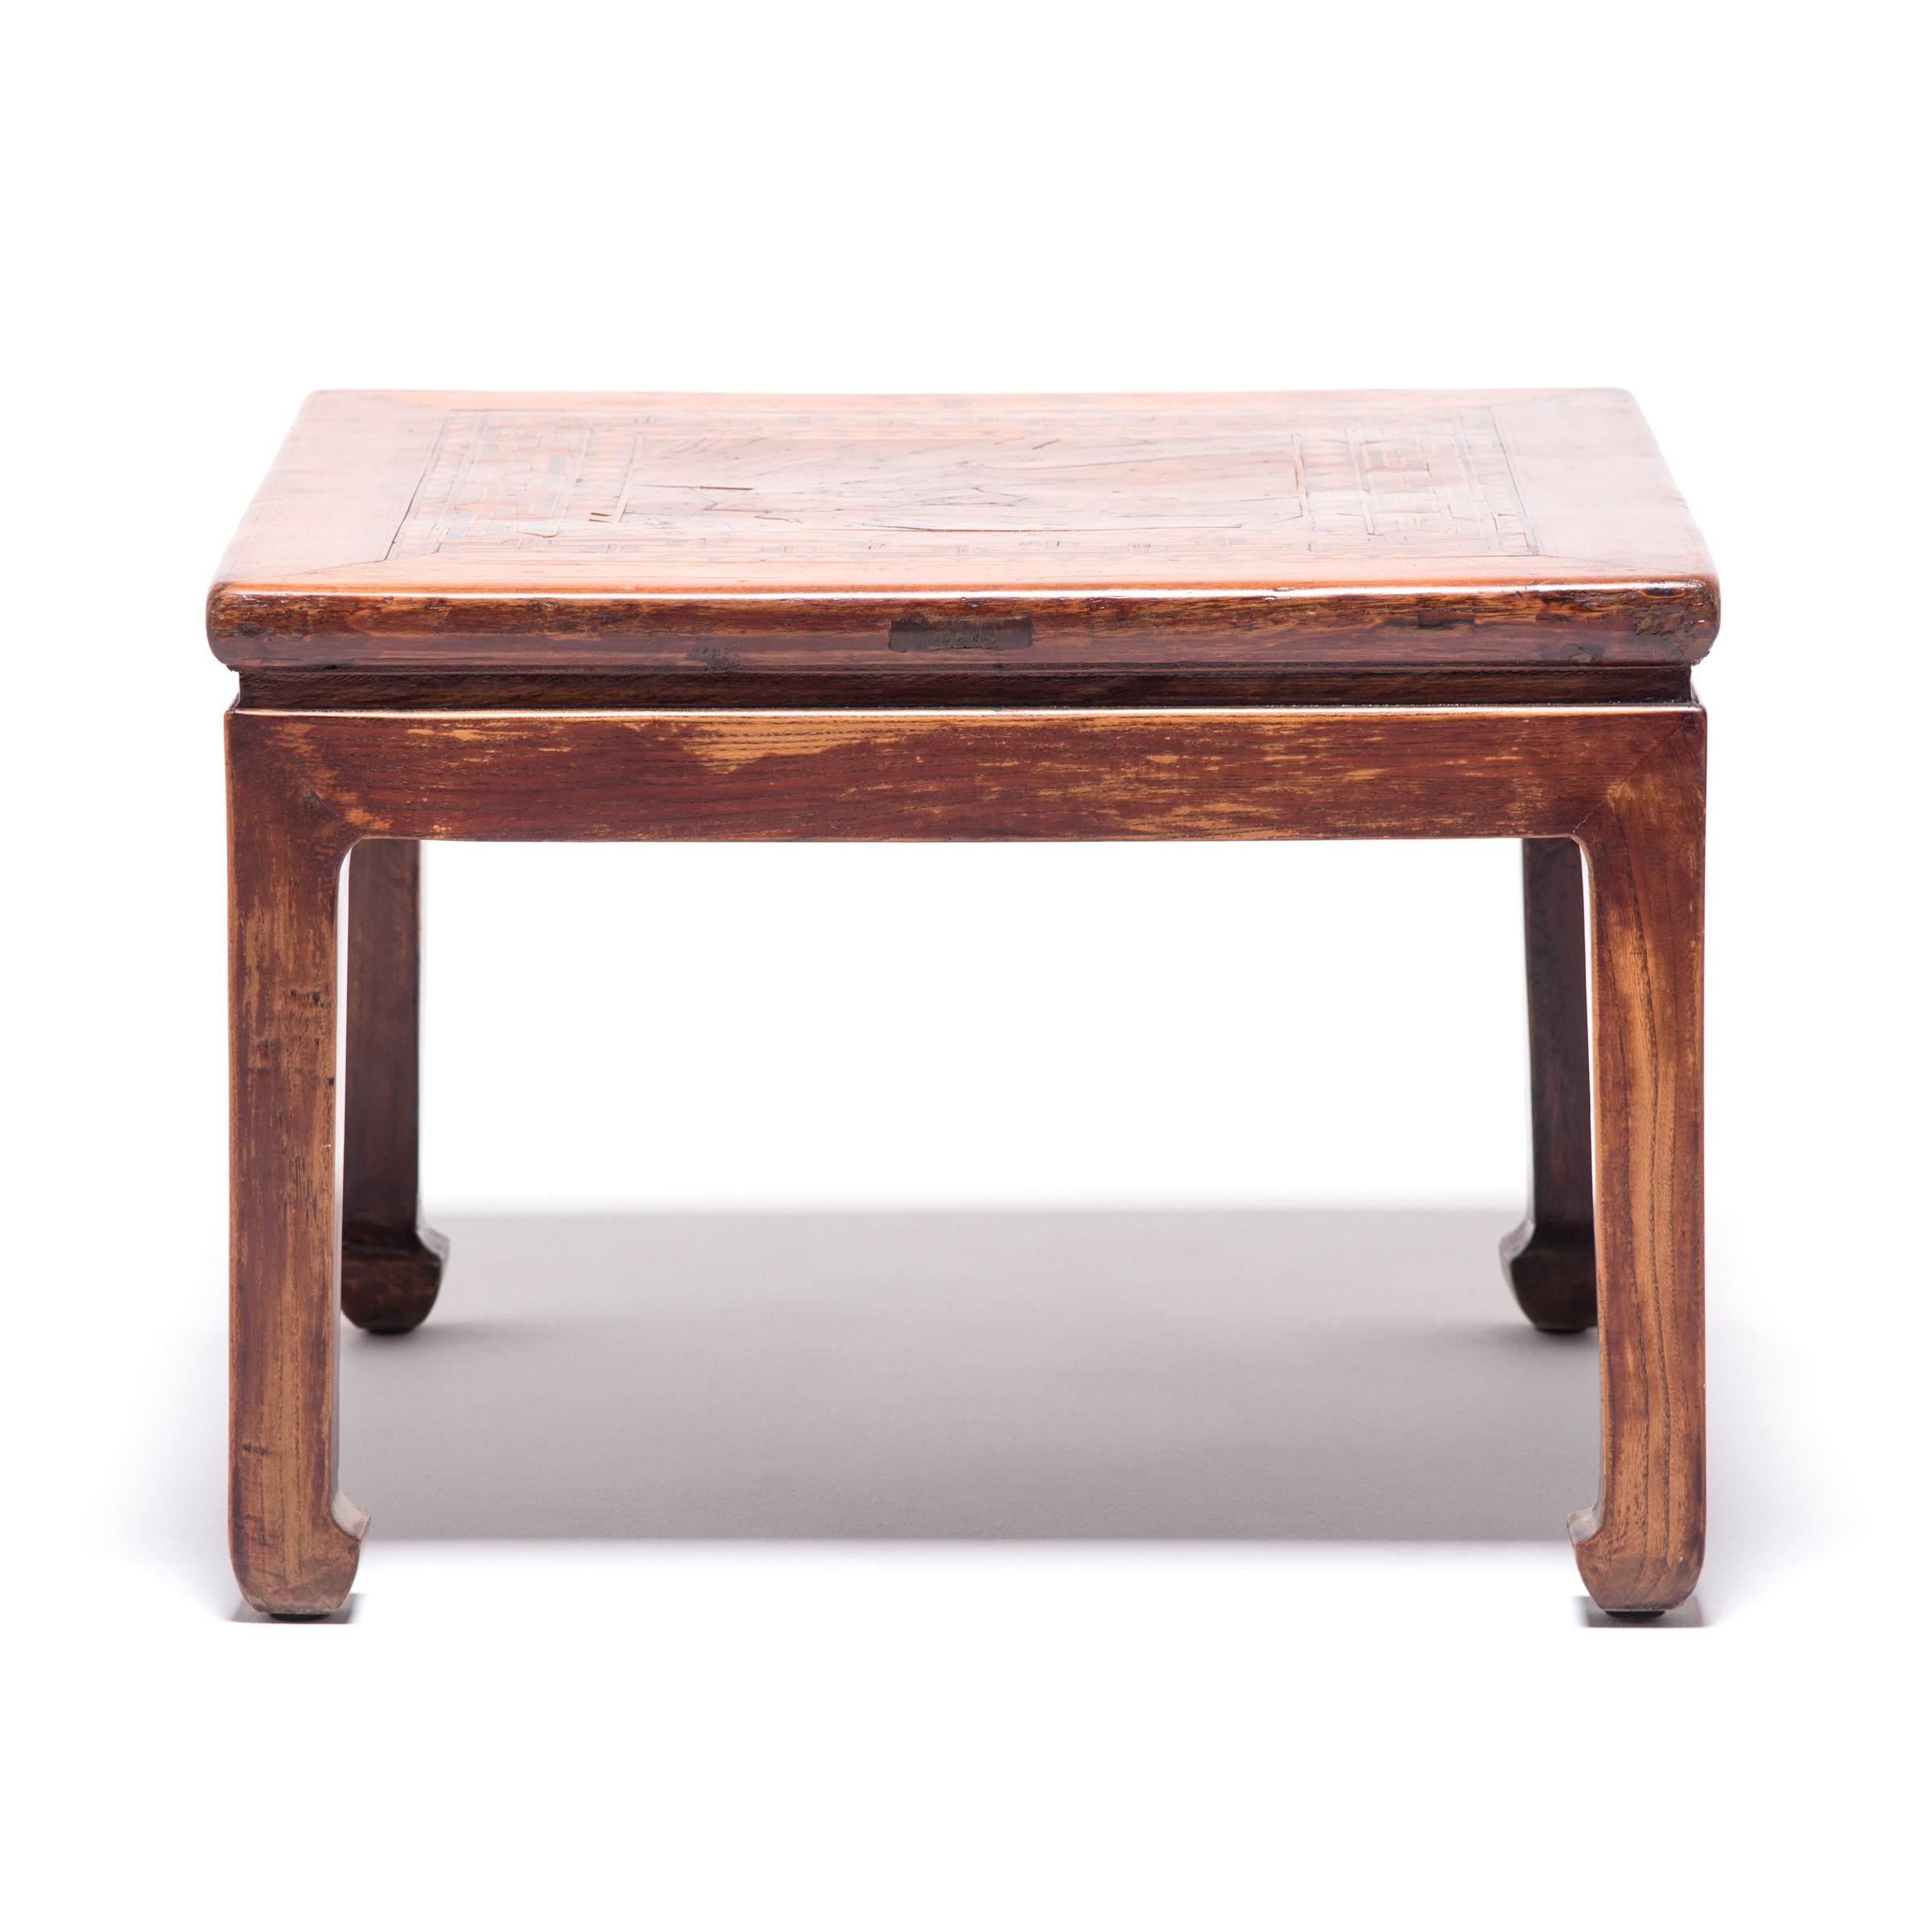 Aneinandergereihte Holzfurnierstücke bilden ein wunderschönes Intarsienmuster auf diesem besonderen Tisch. Das verschlungene geometrische Muster dient als Rahmen für ein Quadrat aus genopptem Holz. Das wegen seiner wirbelnden, frei geformten